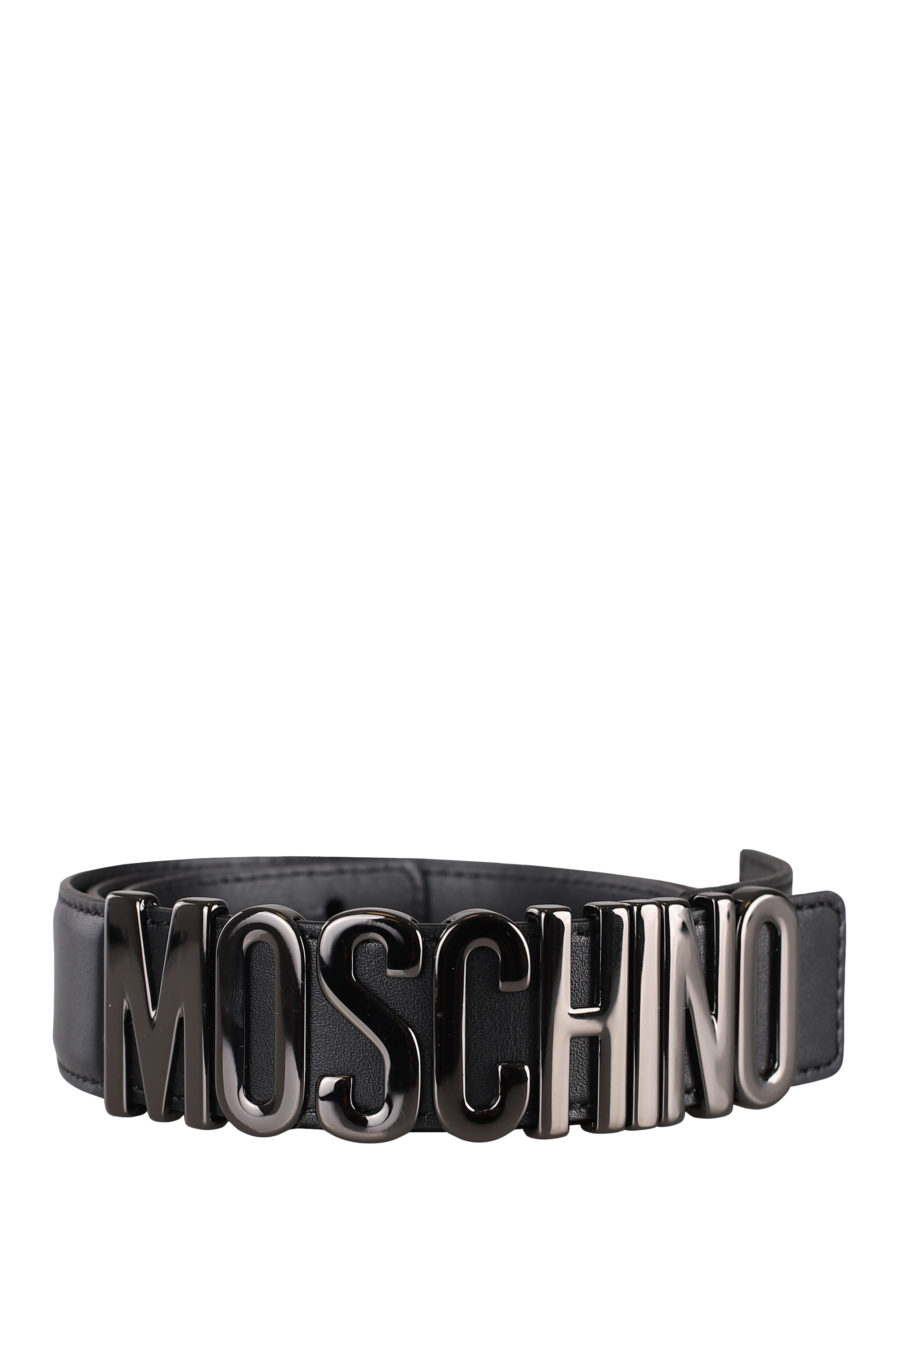 Cinturón negro con logo plateado en metal - IMG 0124